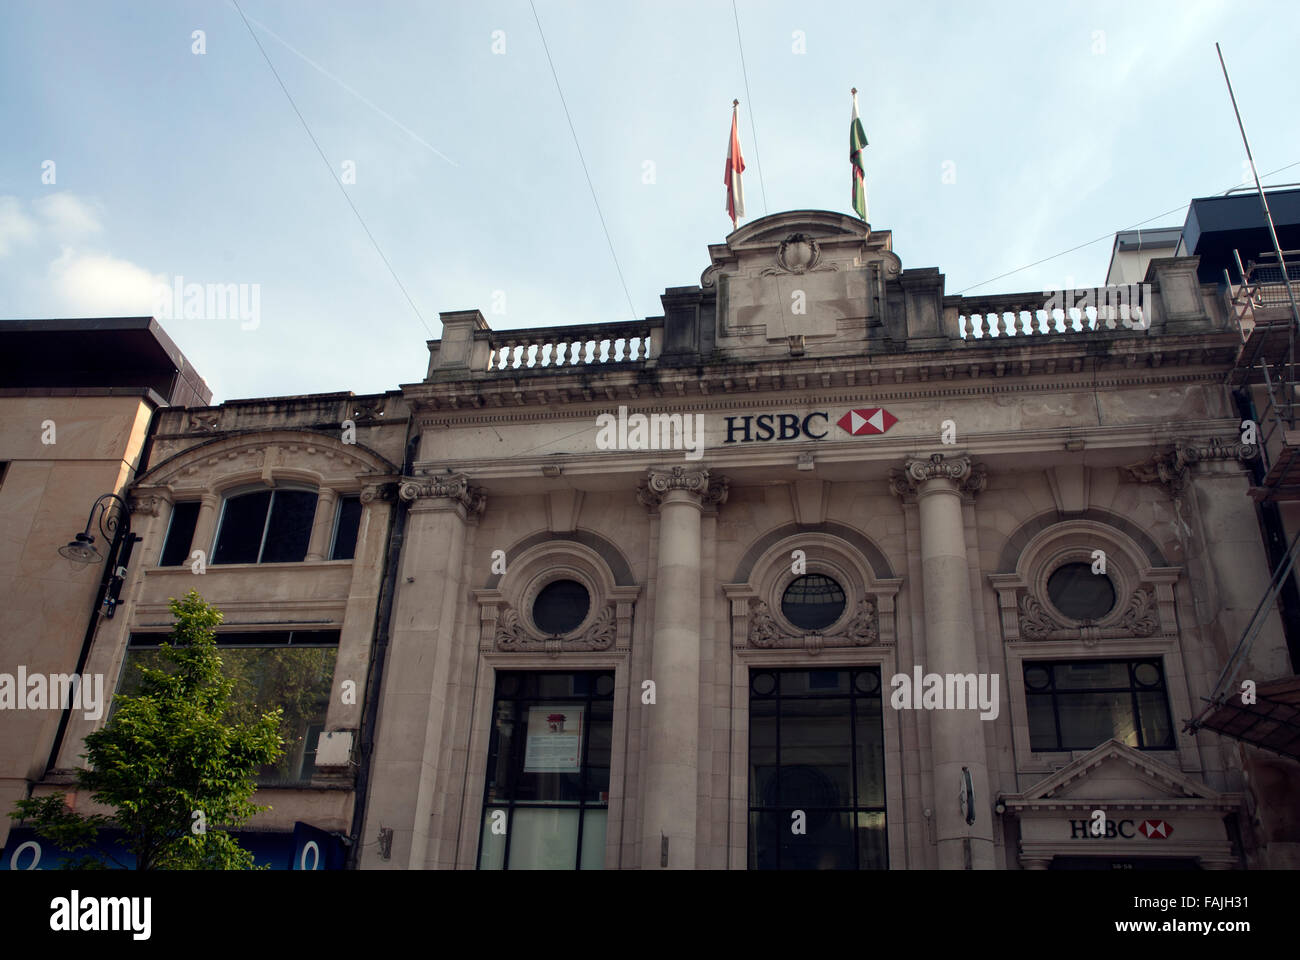 L'immeuble HSBC Cardiff, Pays de Galles, Royaume-Uni Banque D'Images